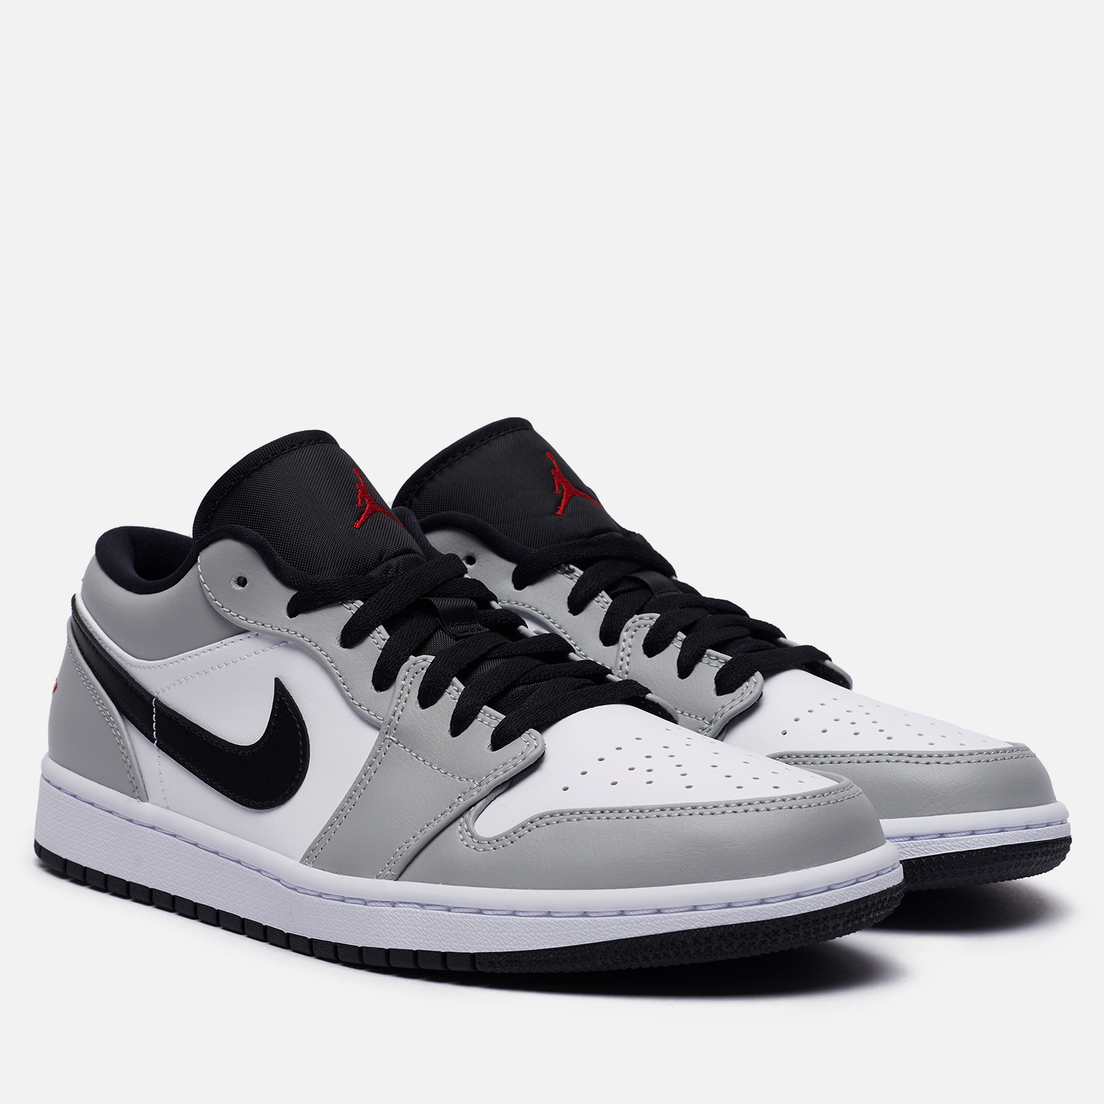 Nike Air Jordan 1 Low Grey White Black. Nike Air Jordan 1 Low Smoke Grey. Nike Air Jordan 1 Low Grey. Nike Air Jordan 1 Low.